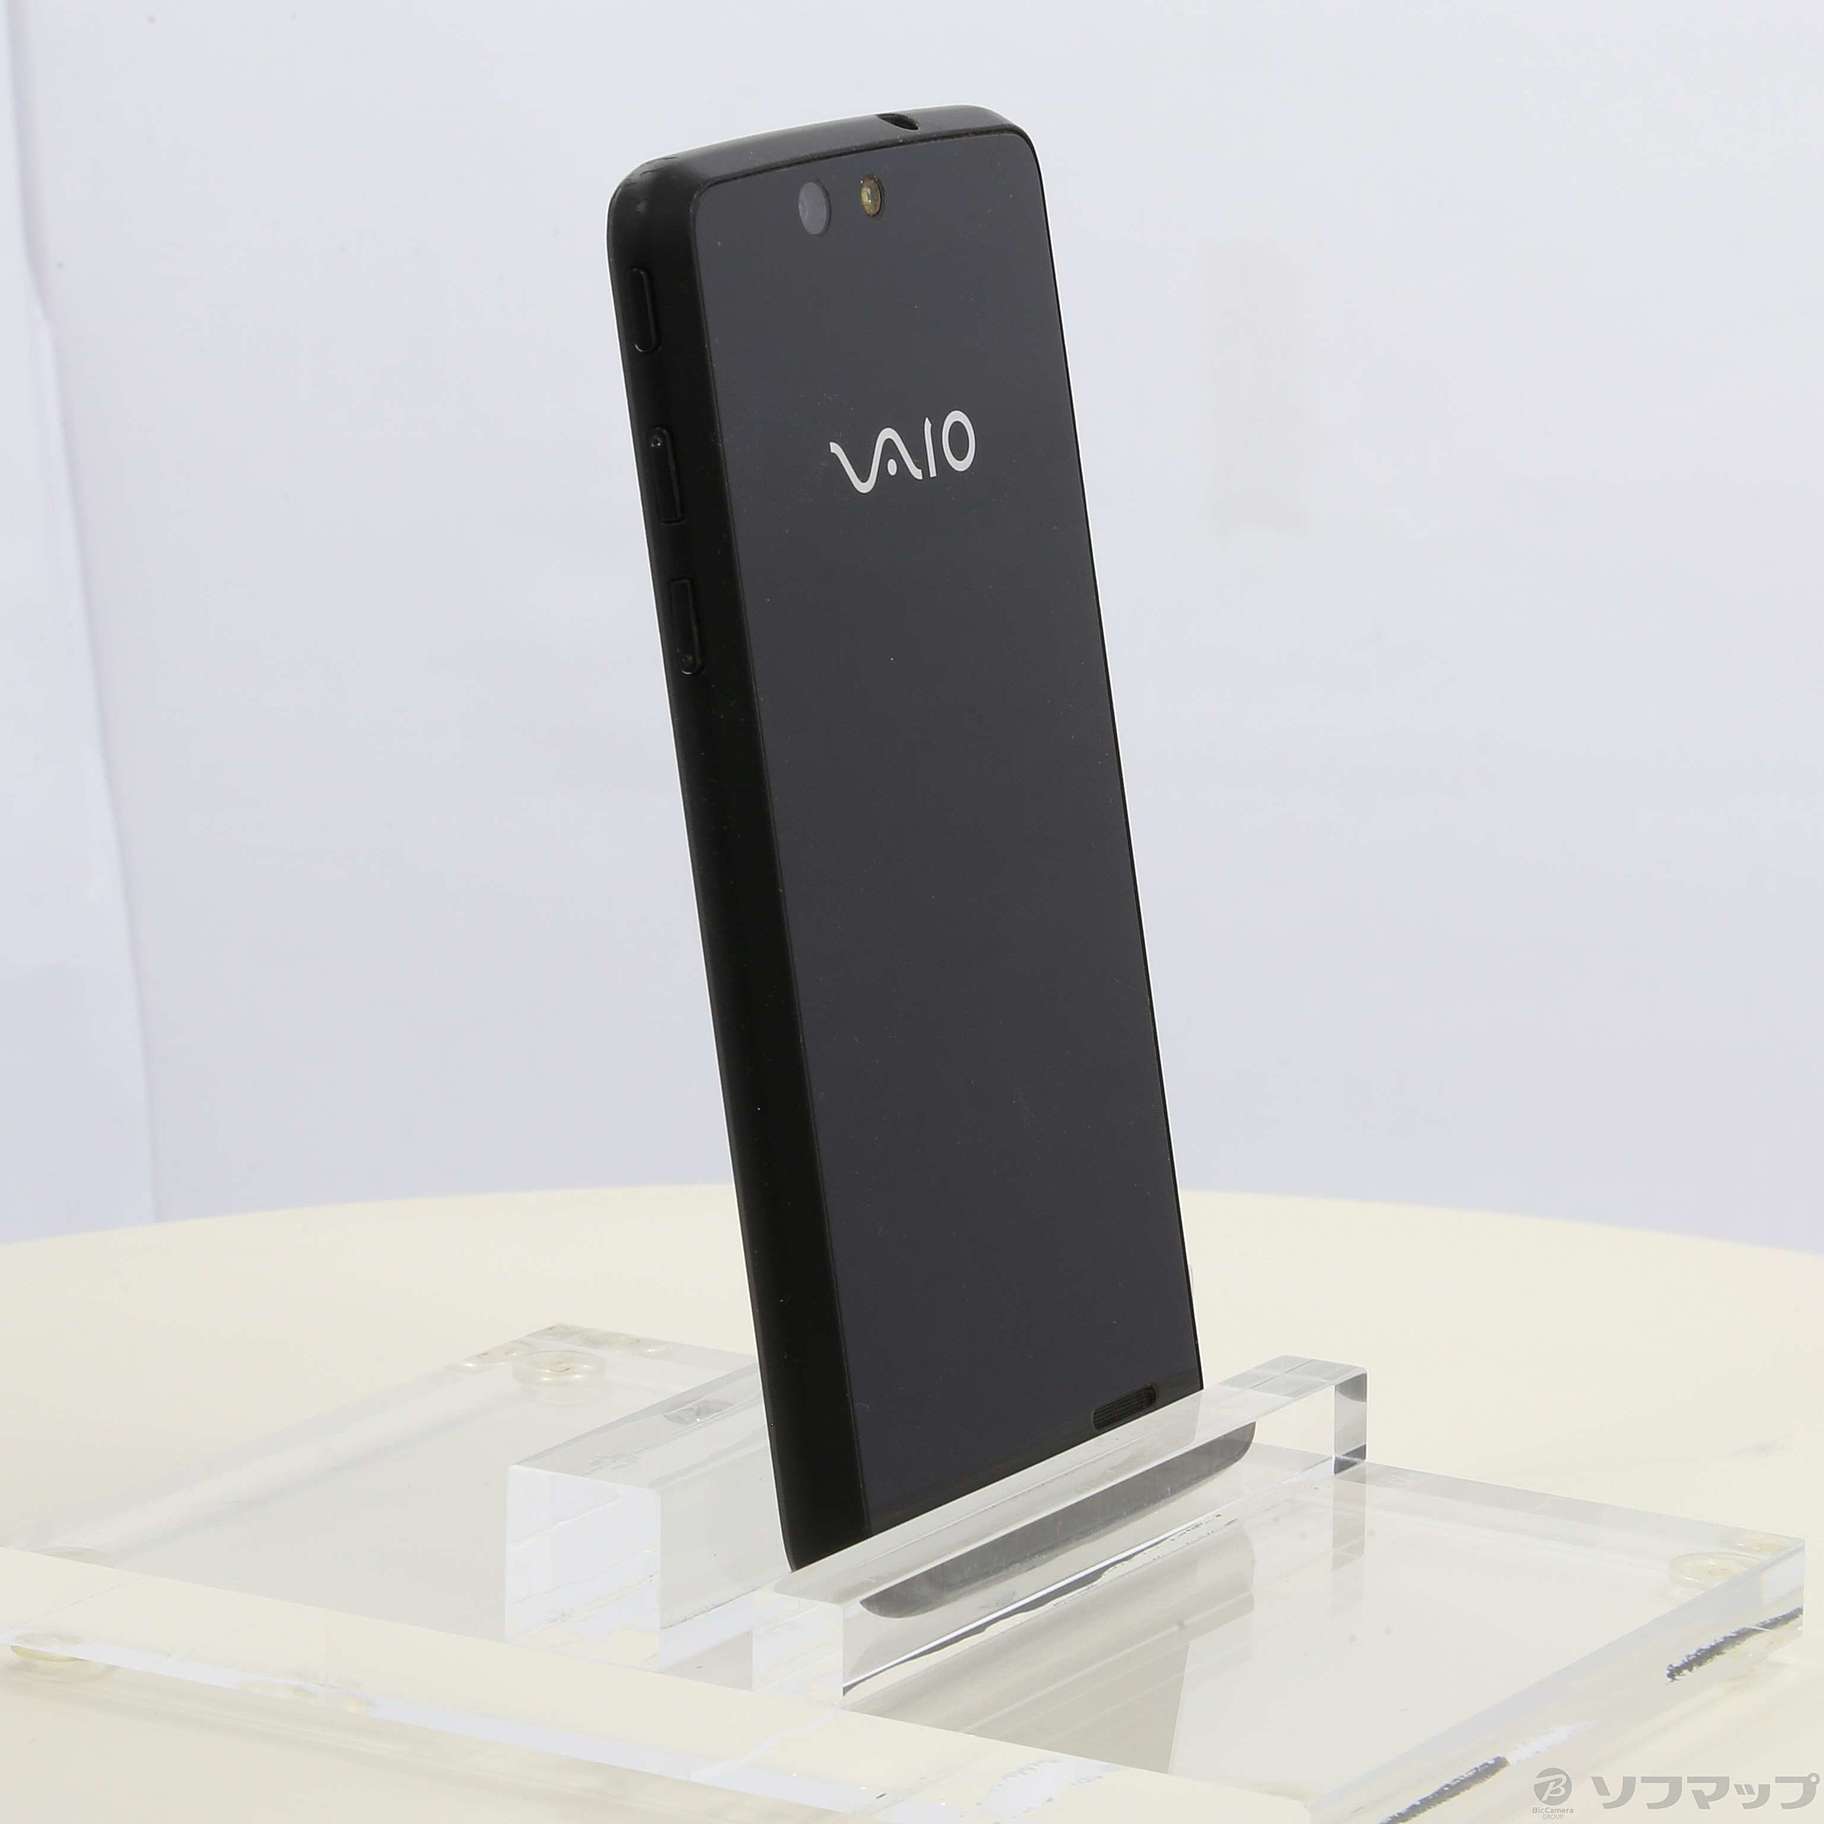 セール対象品 VAIO Phone 16GB ブラック BM-VA10J-P SIMフリー